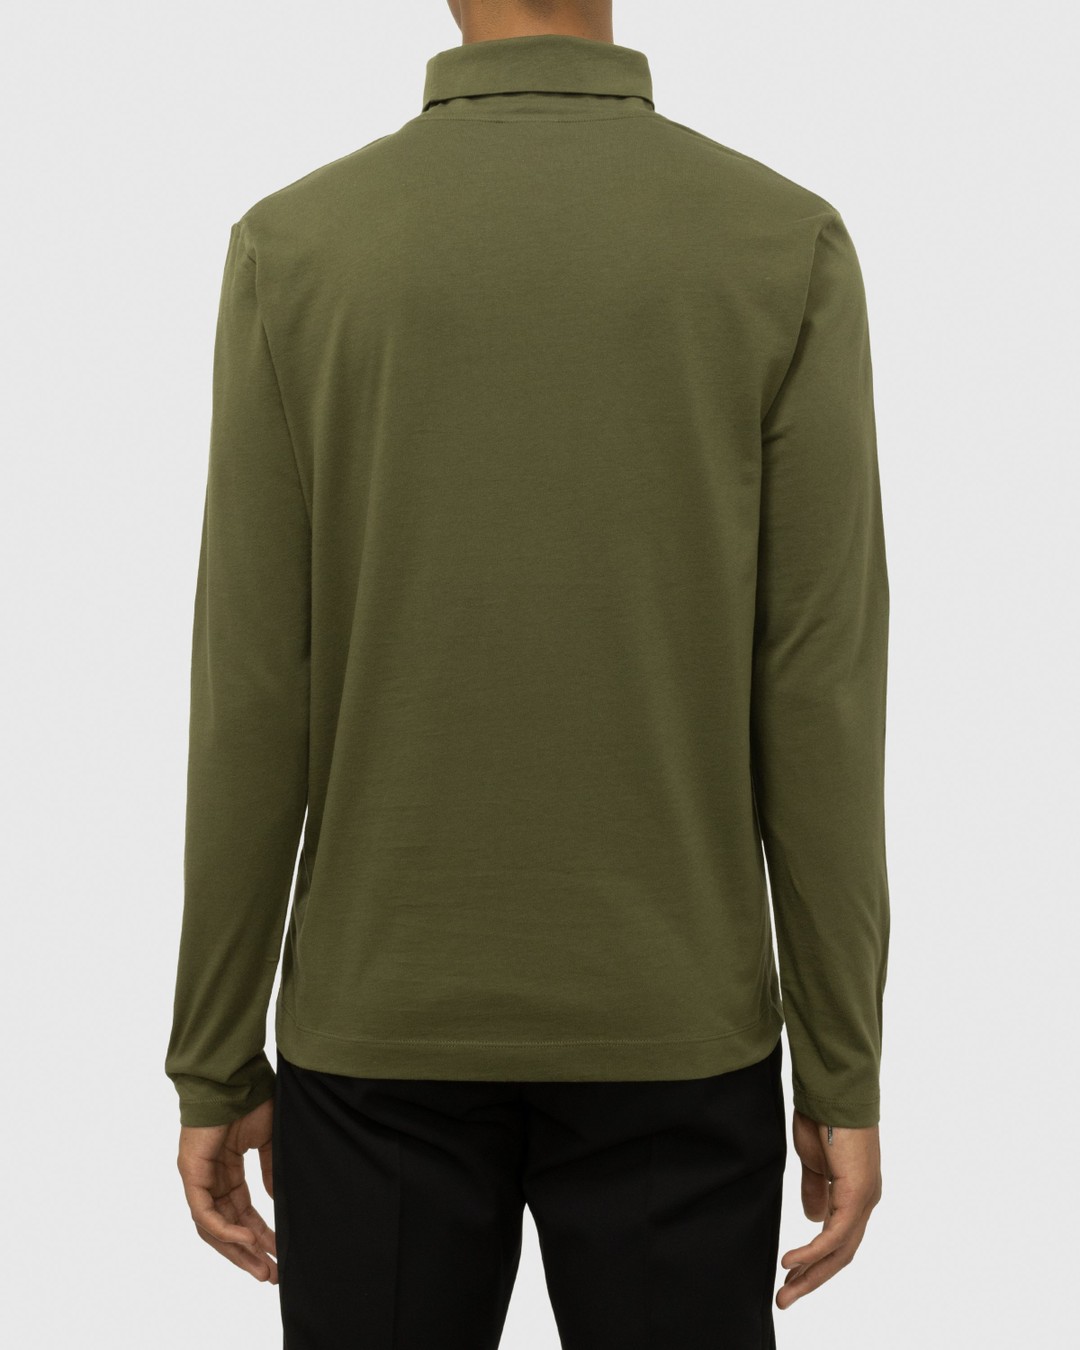 Dries van Noten – Heyzo Turtleneck Jersey Shirt Green - Sweats - Green - Image 2